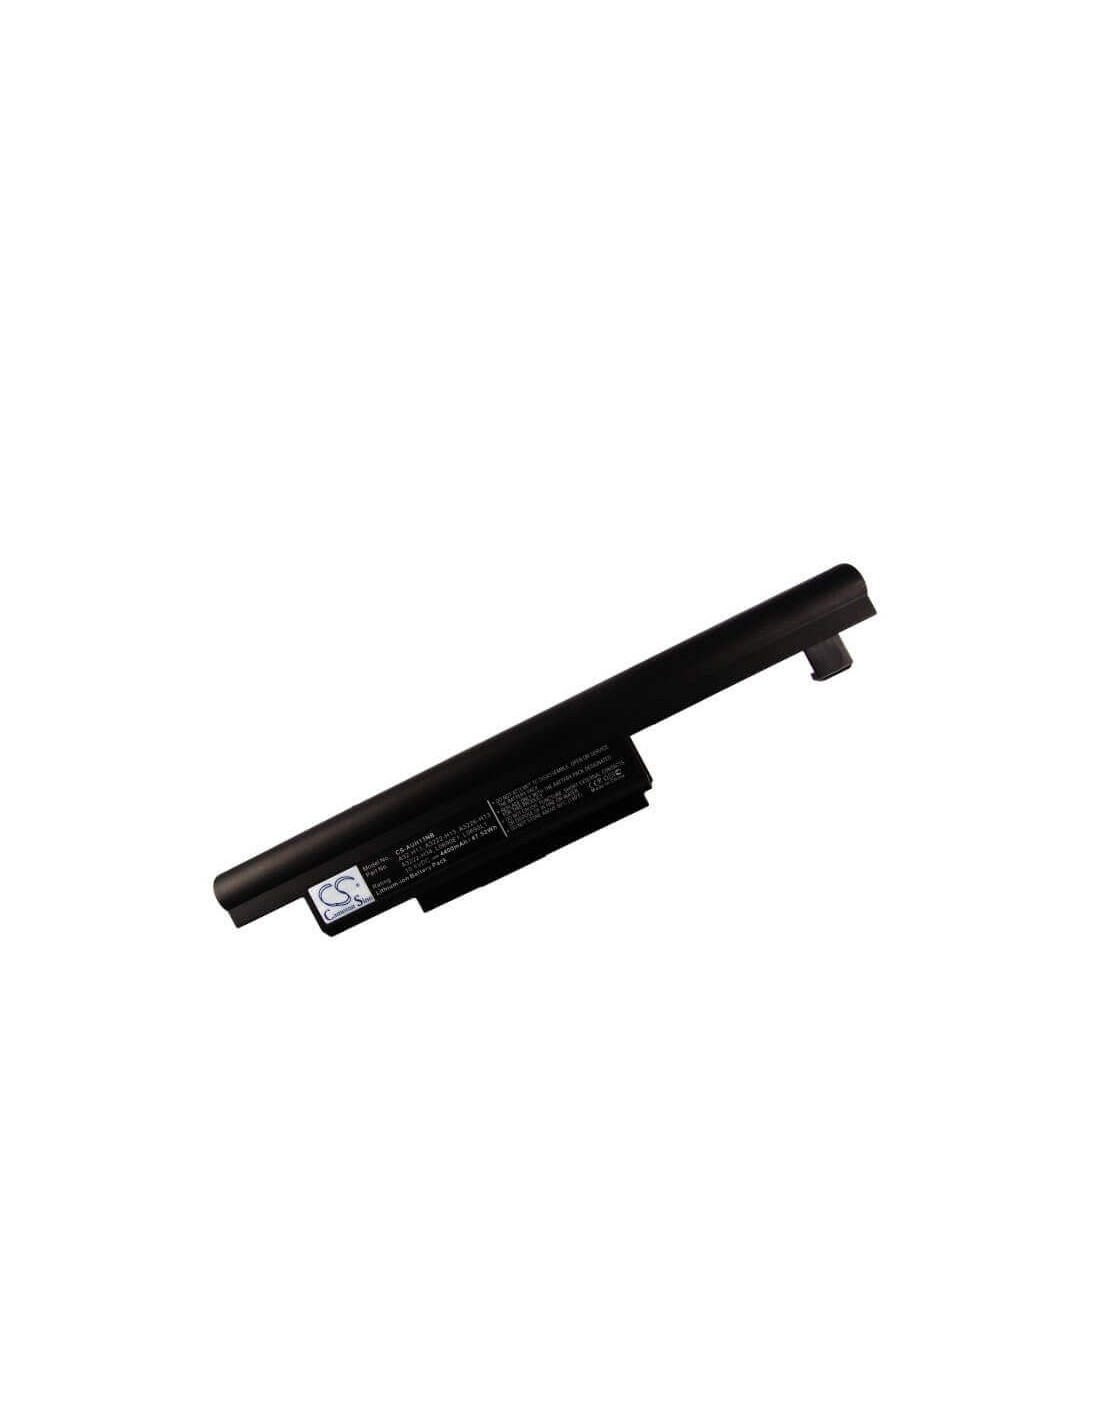 Black Battery for Founder E400-i3, R430-i333bq, R430ig-i337dx 10.8V, 4400mAh - 47.52Wh